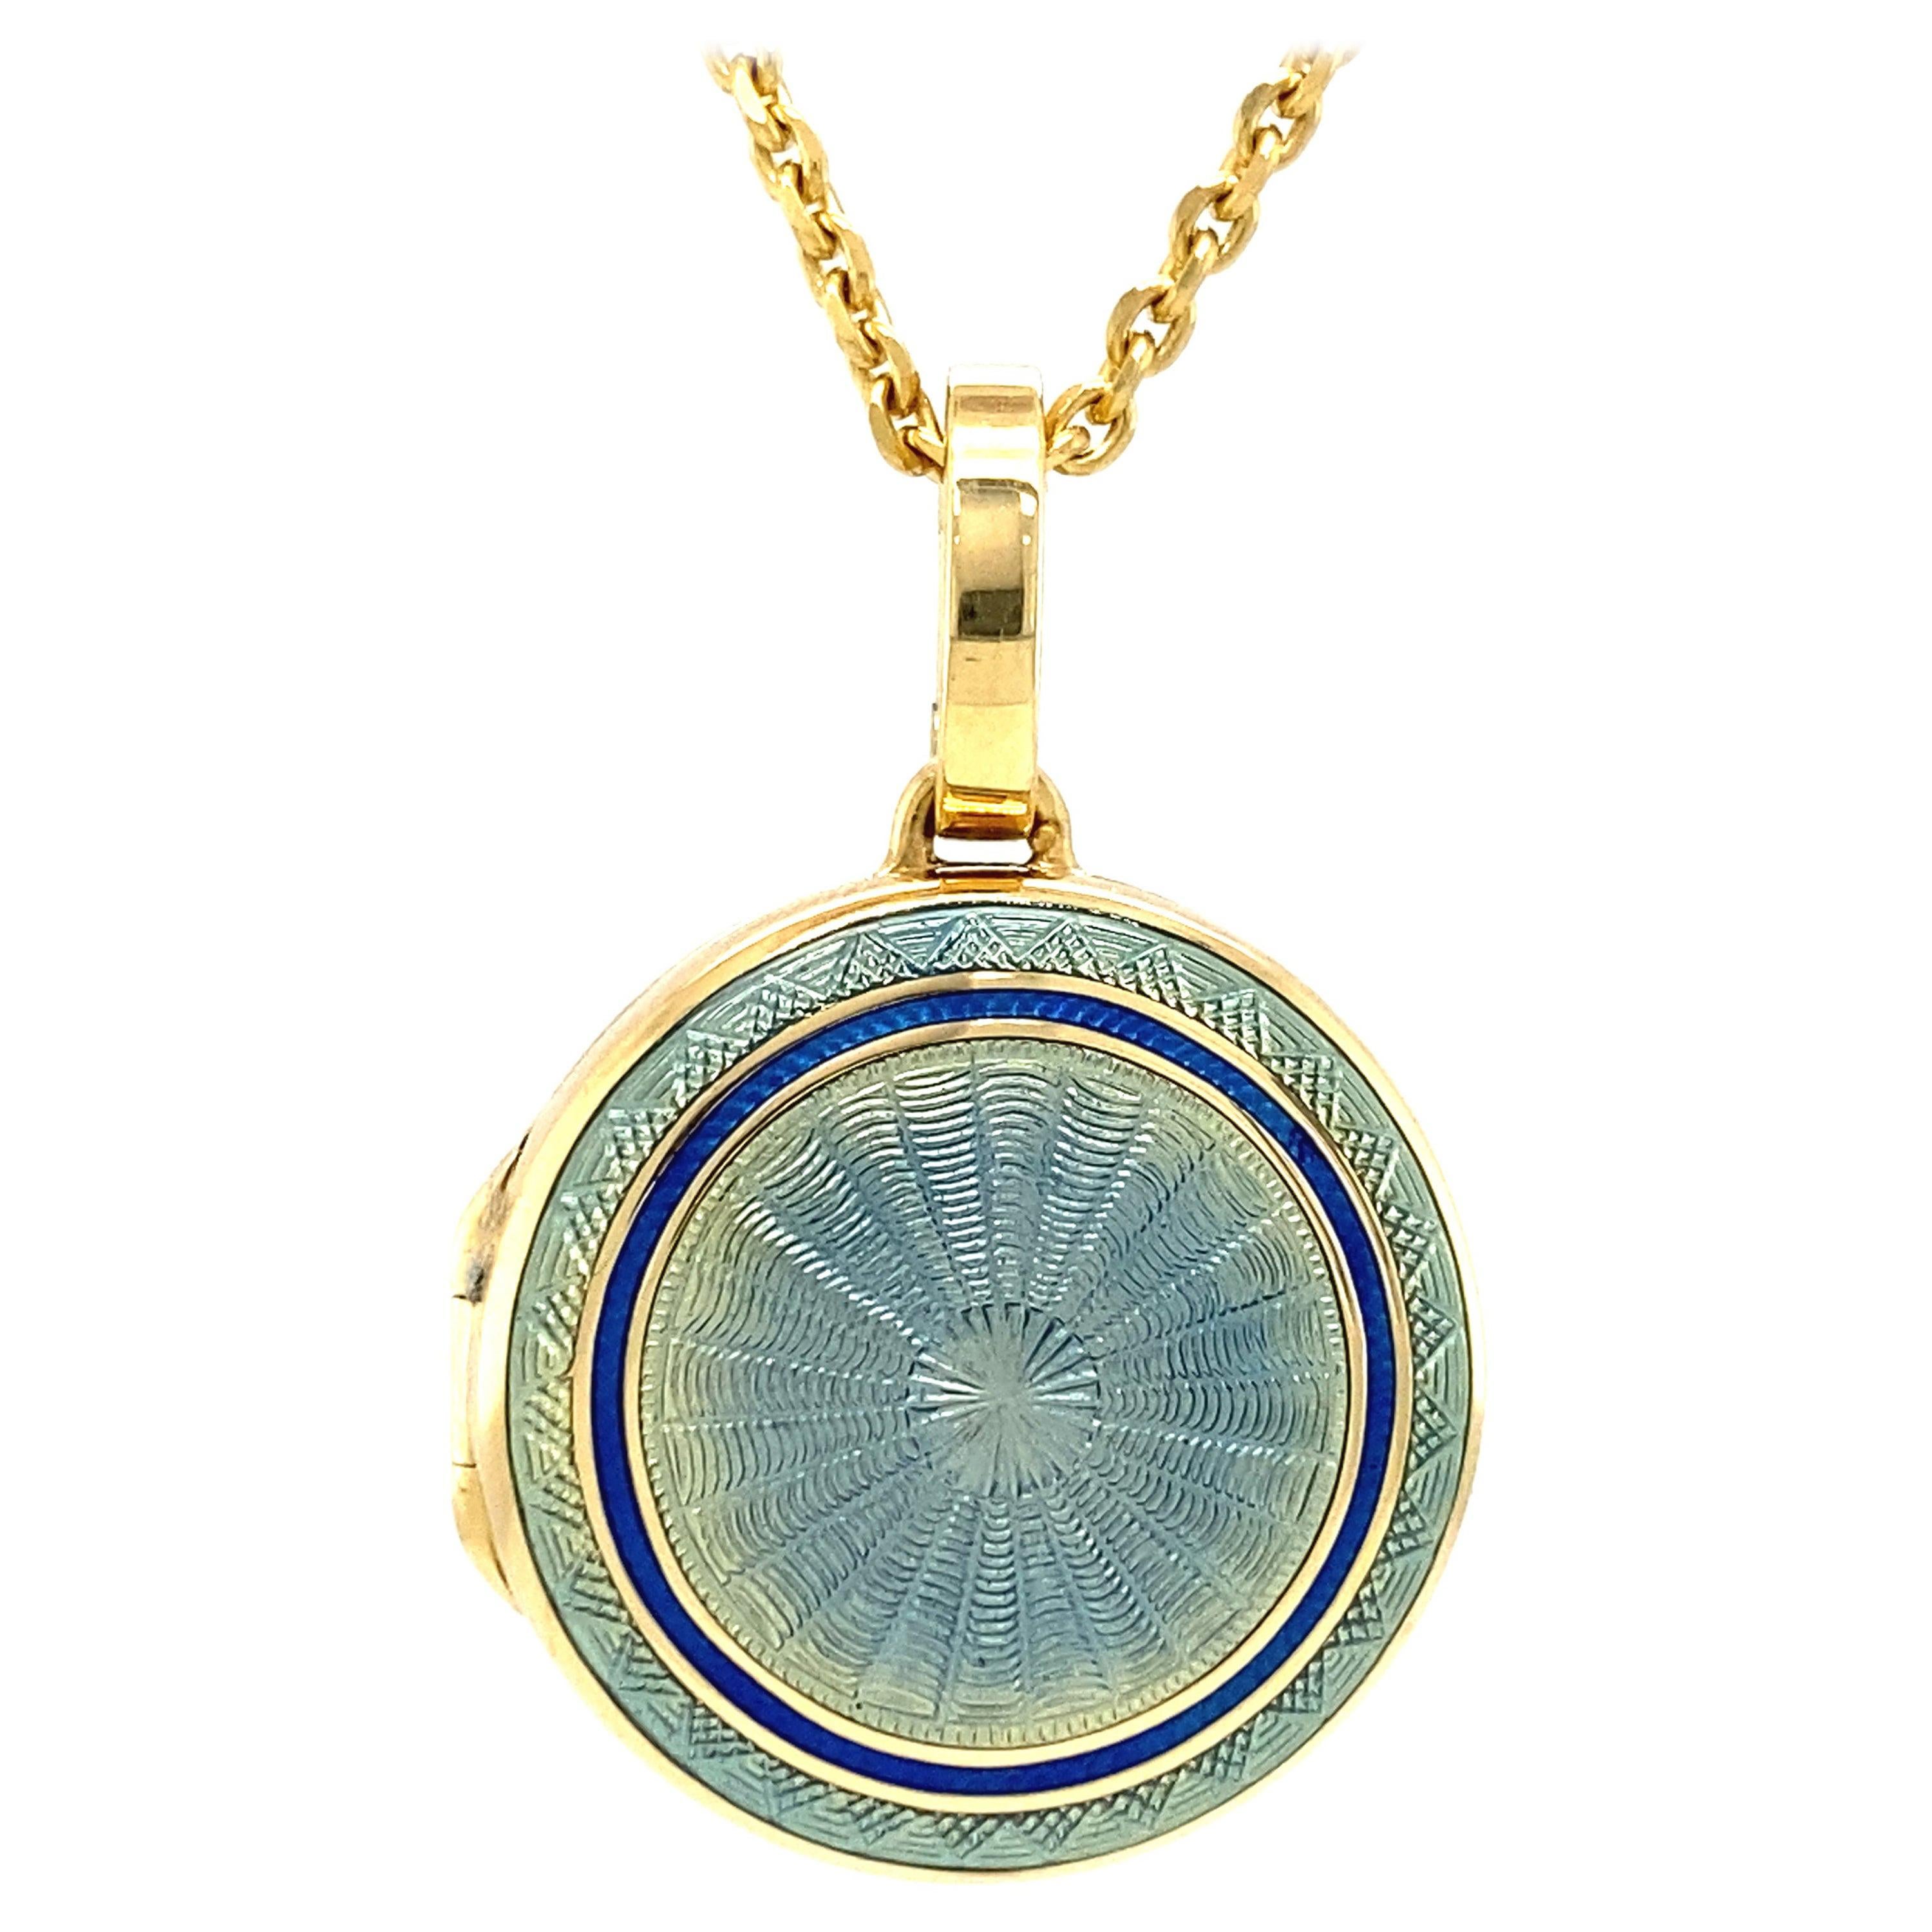 Collier médaillon avec pendentif rond en or jaune 18 carats, émail bleu diamètre 21,0 mm